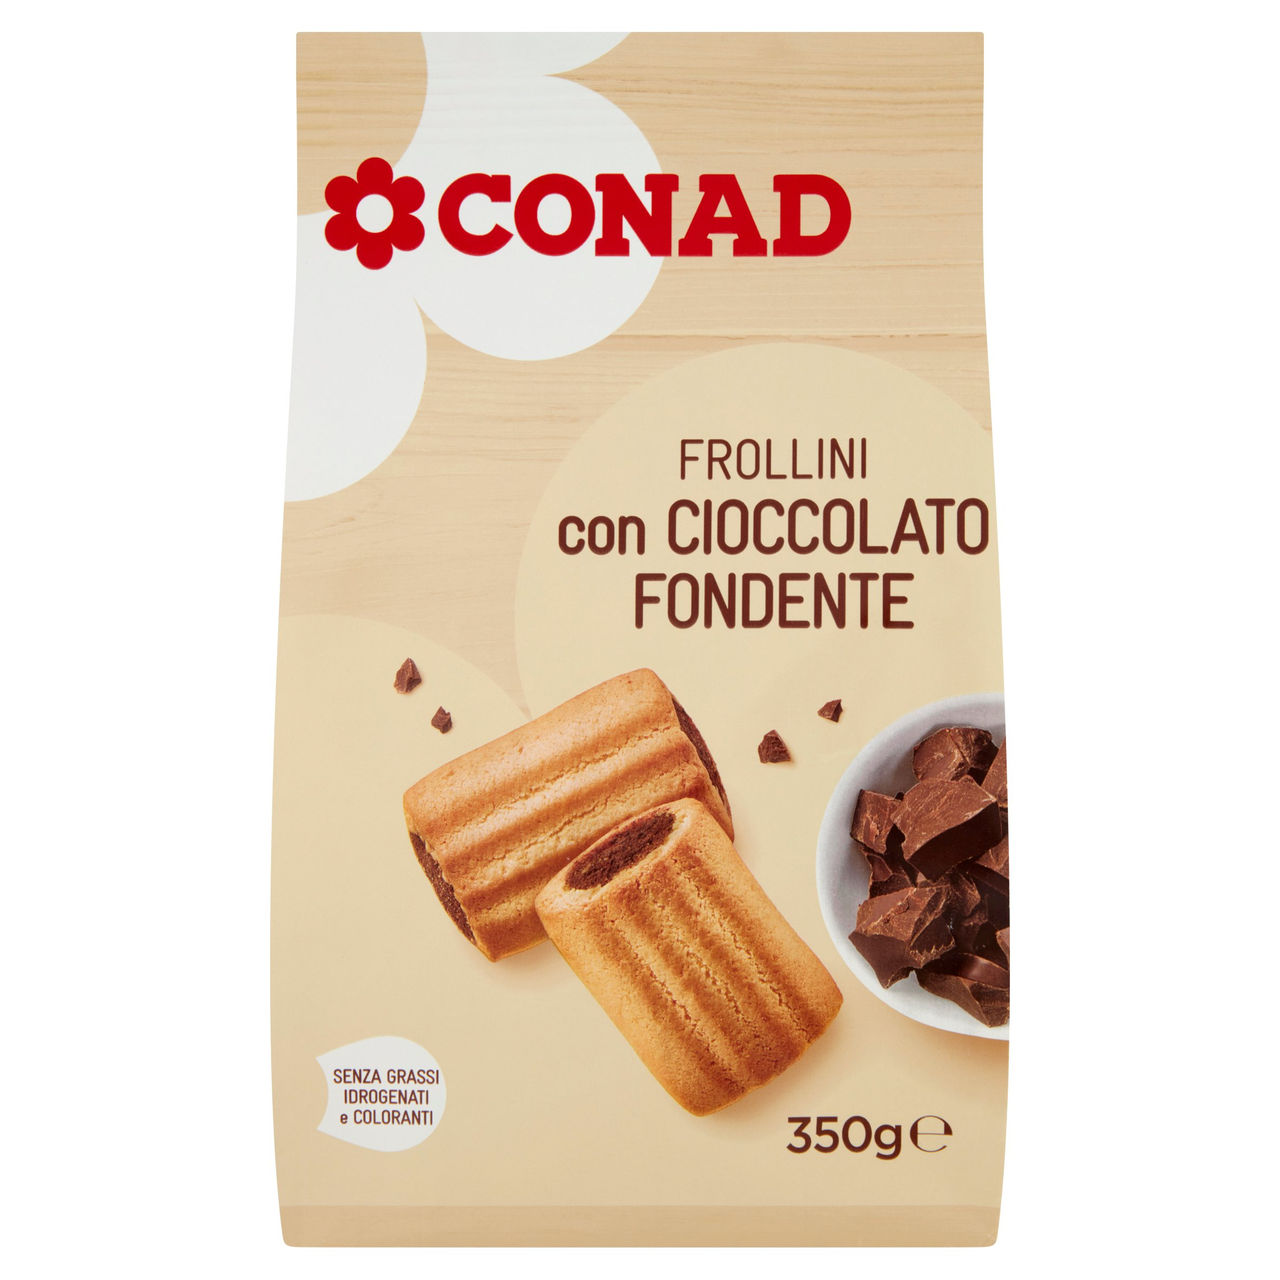 Frollini con cioccolato fondente Conad online